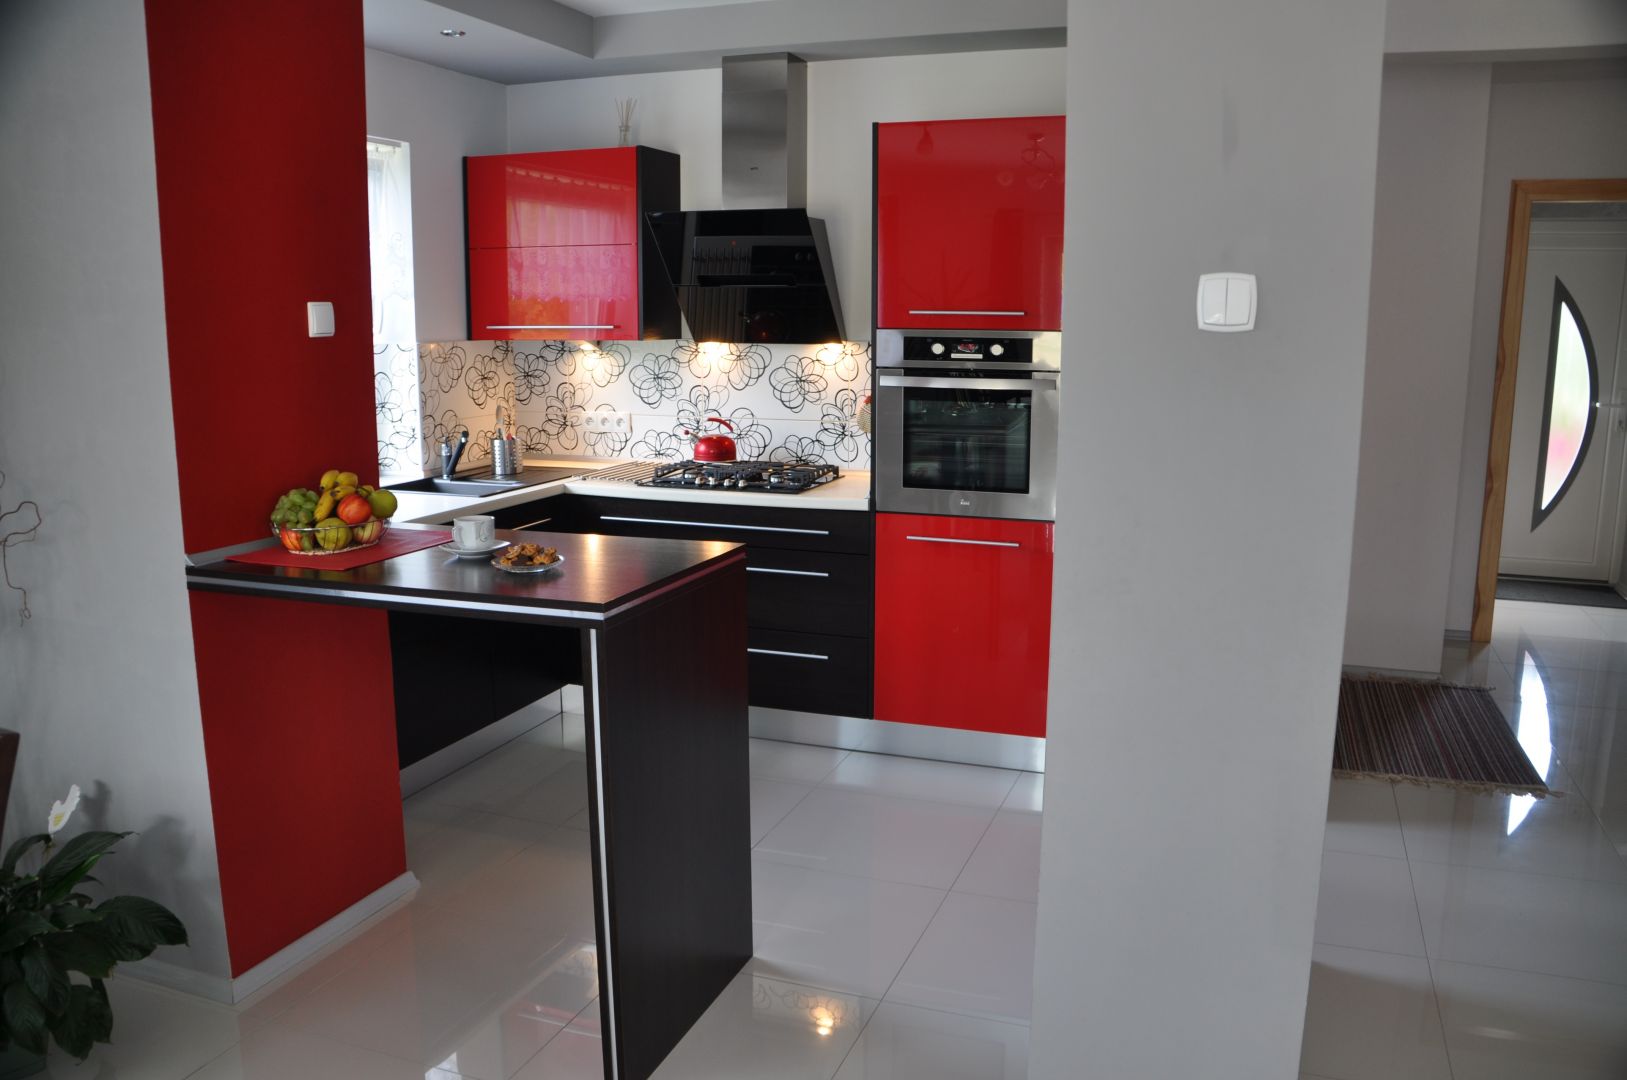 Kuchnia PINIO z czerwonymi meblami, białym blatem i czarnym stołem łączącym kuchnię z salonem
Fot. Kuchnie PINIO